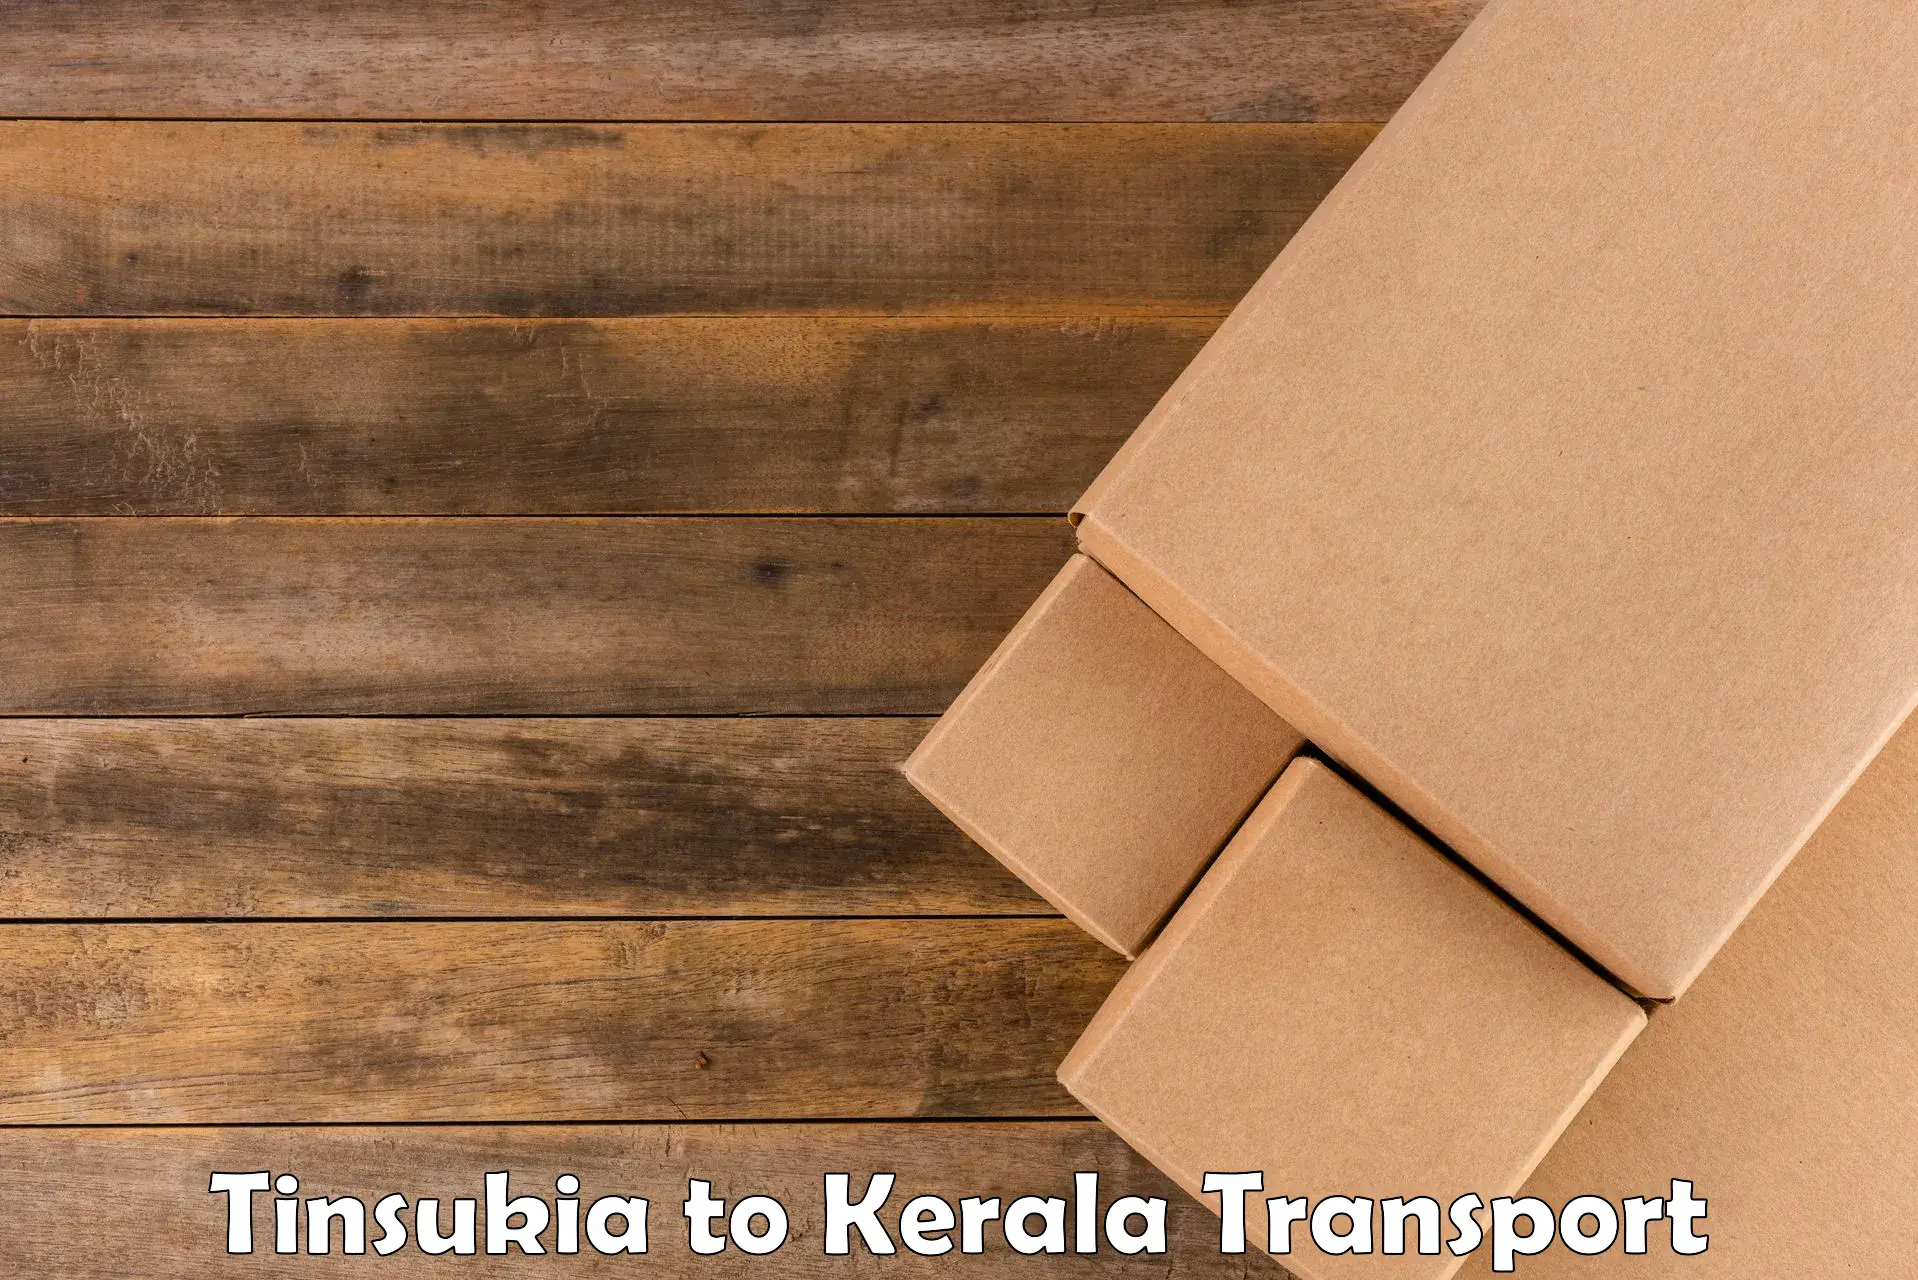 Two wheeler parcel service Tinsukia to Tiruvalla